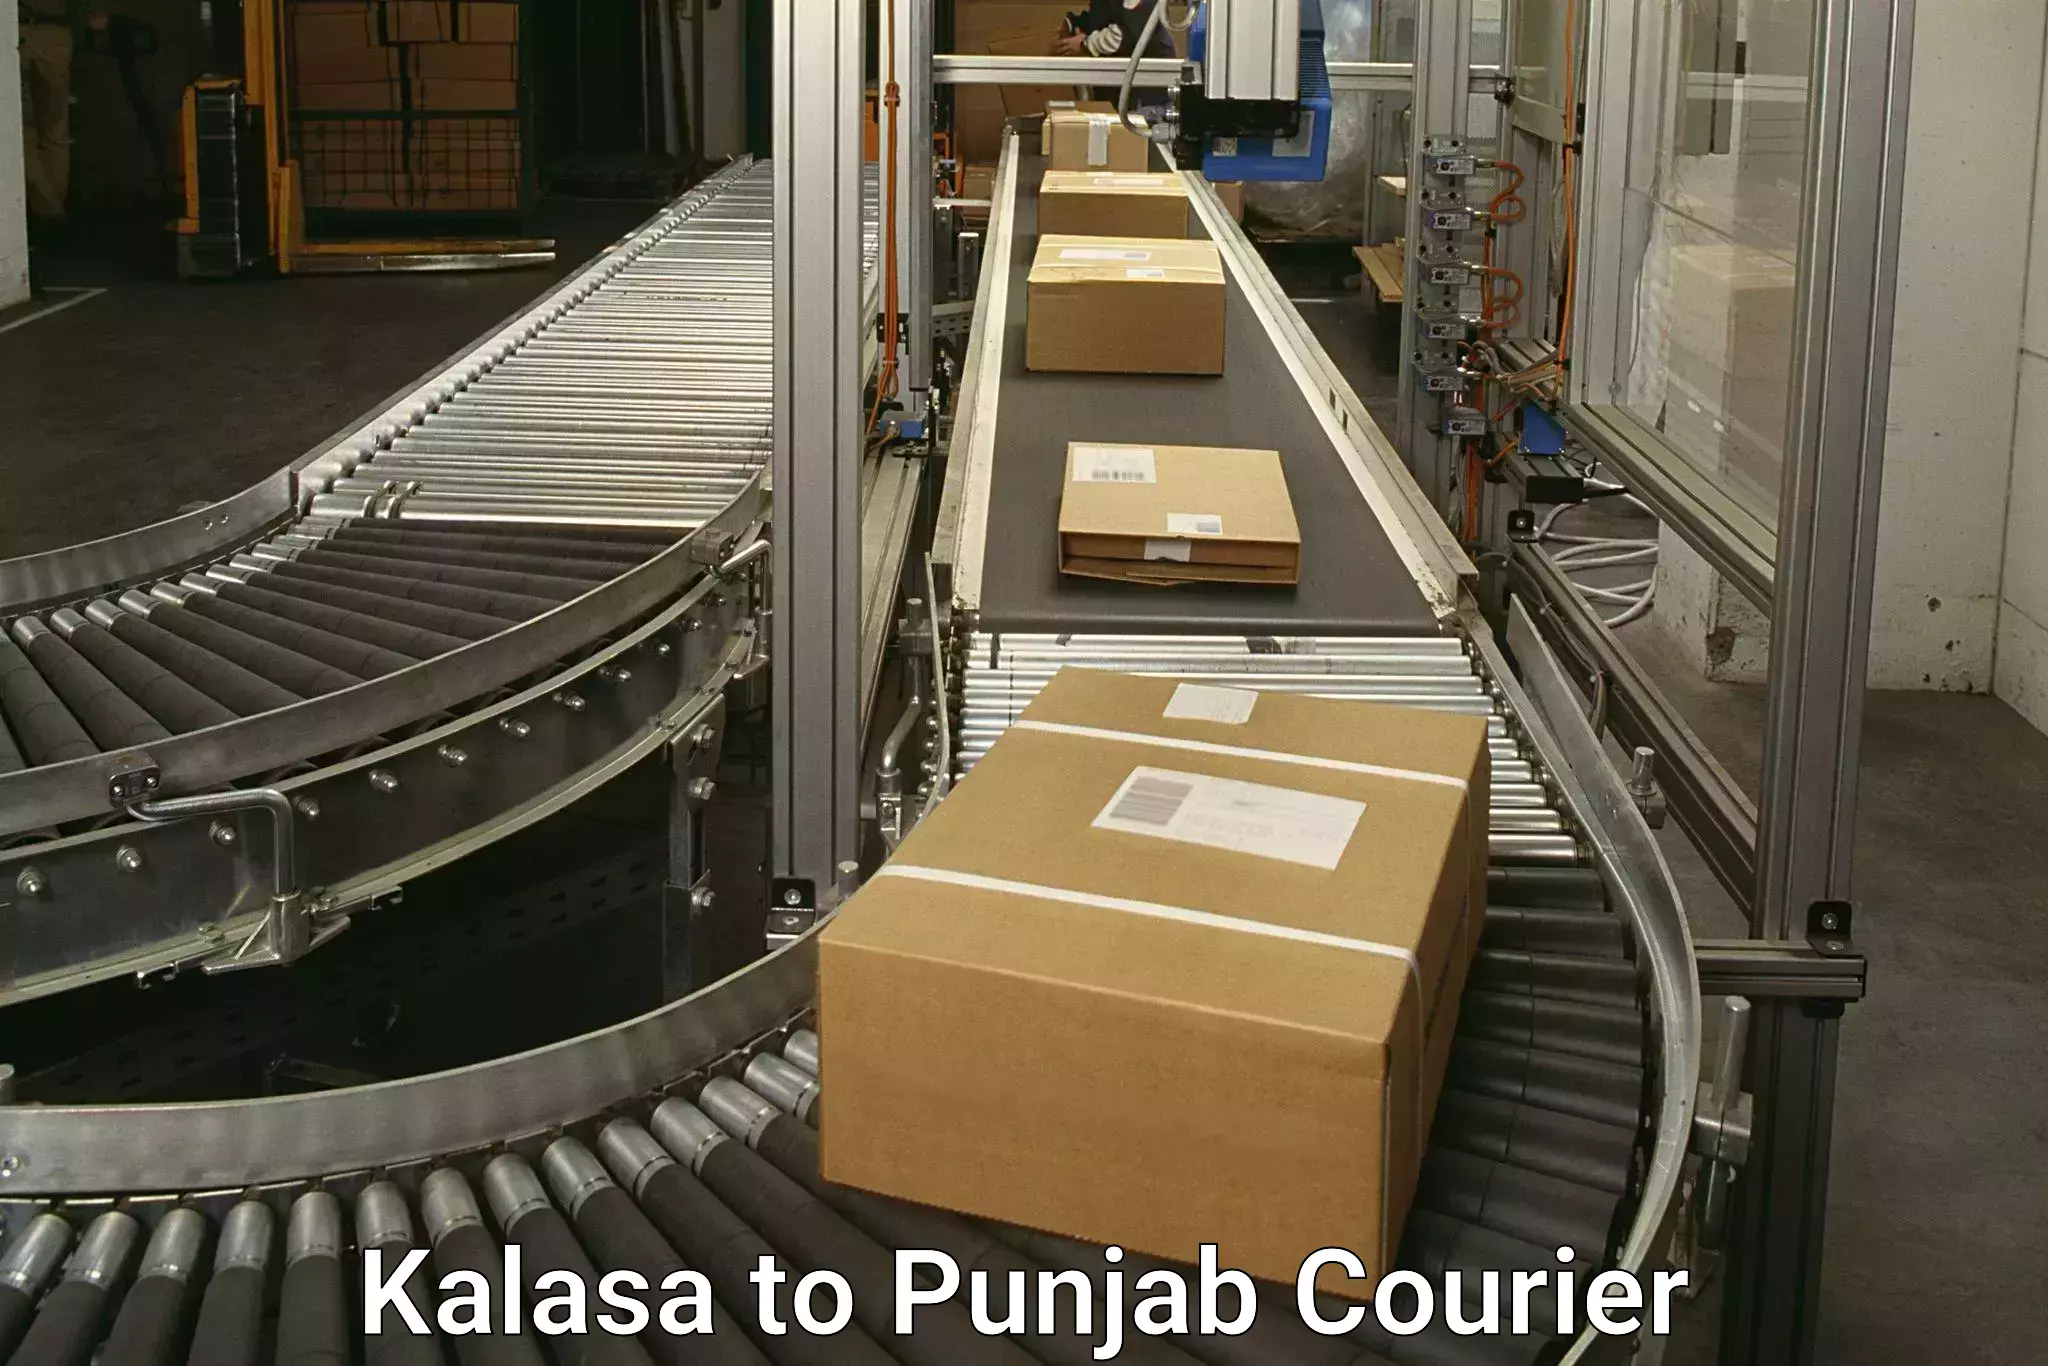 Tech-enabled shipping Kalasa to Batala